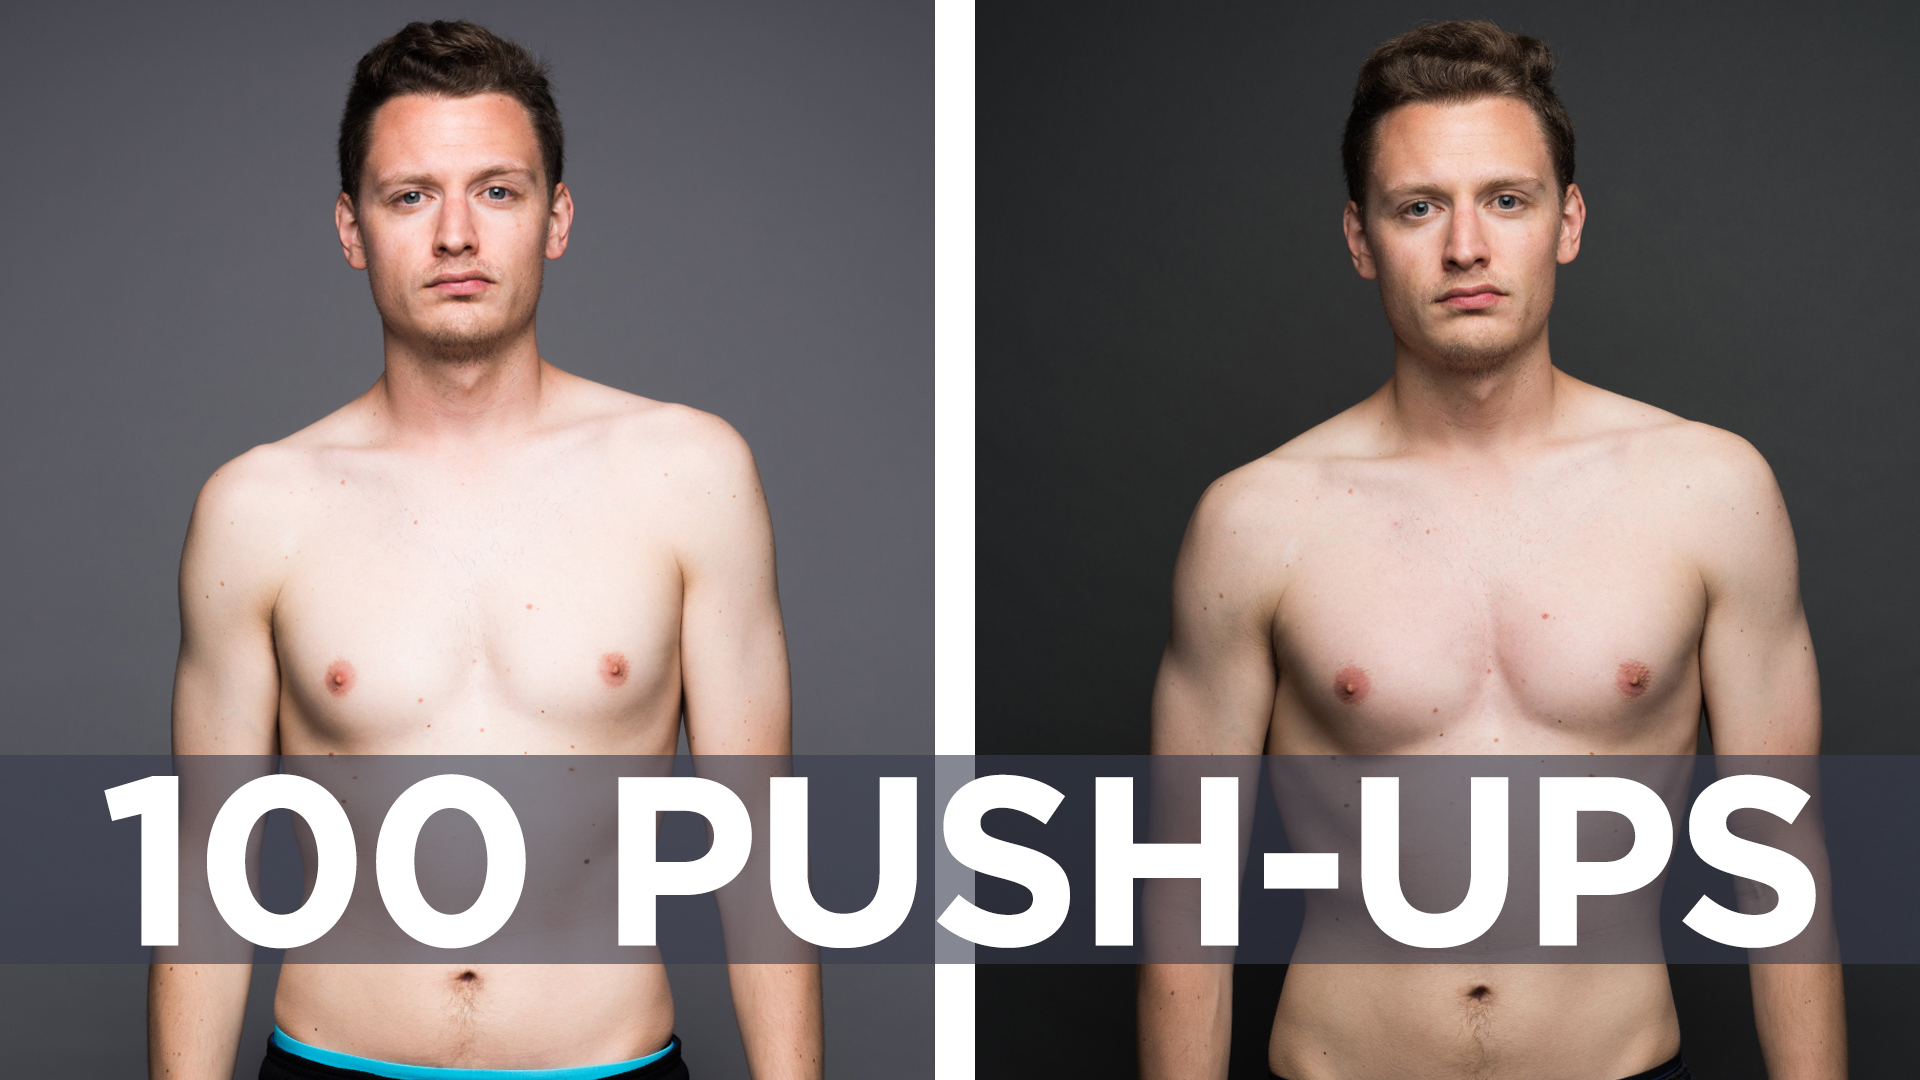 100 pushups